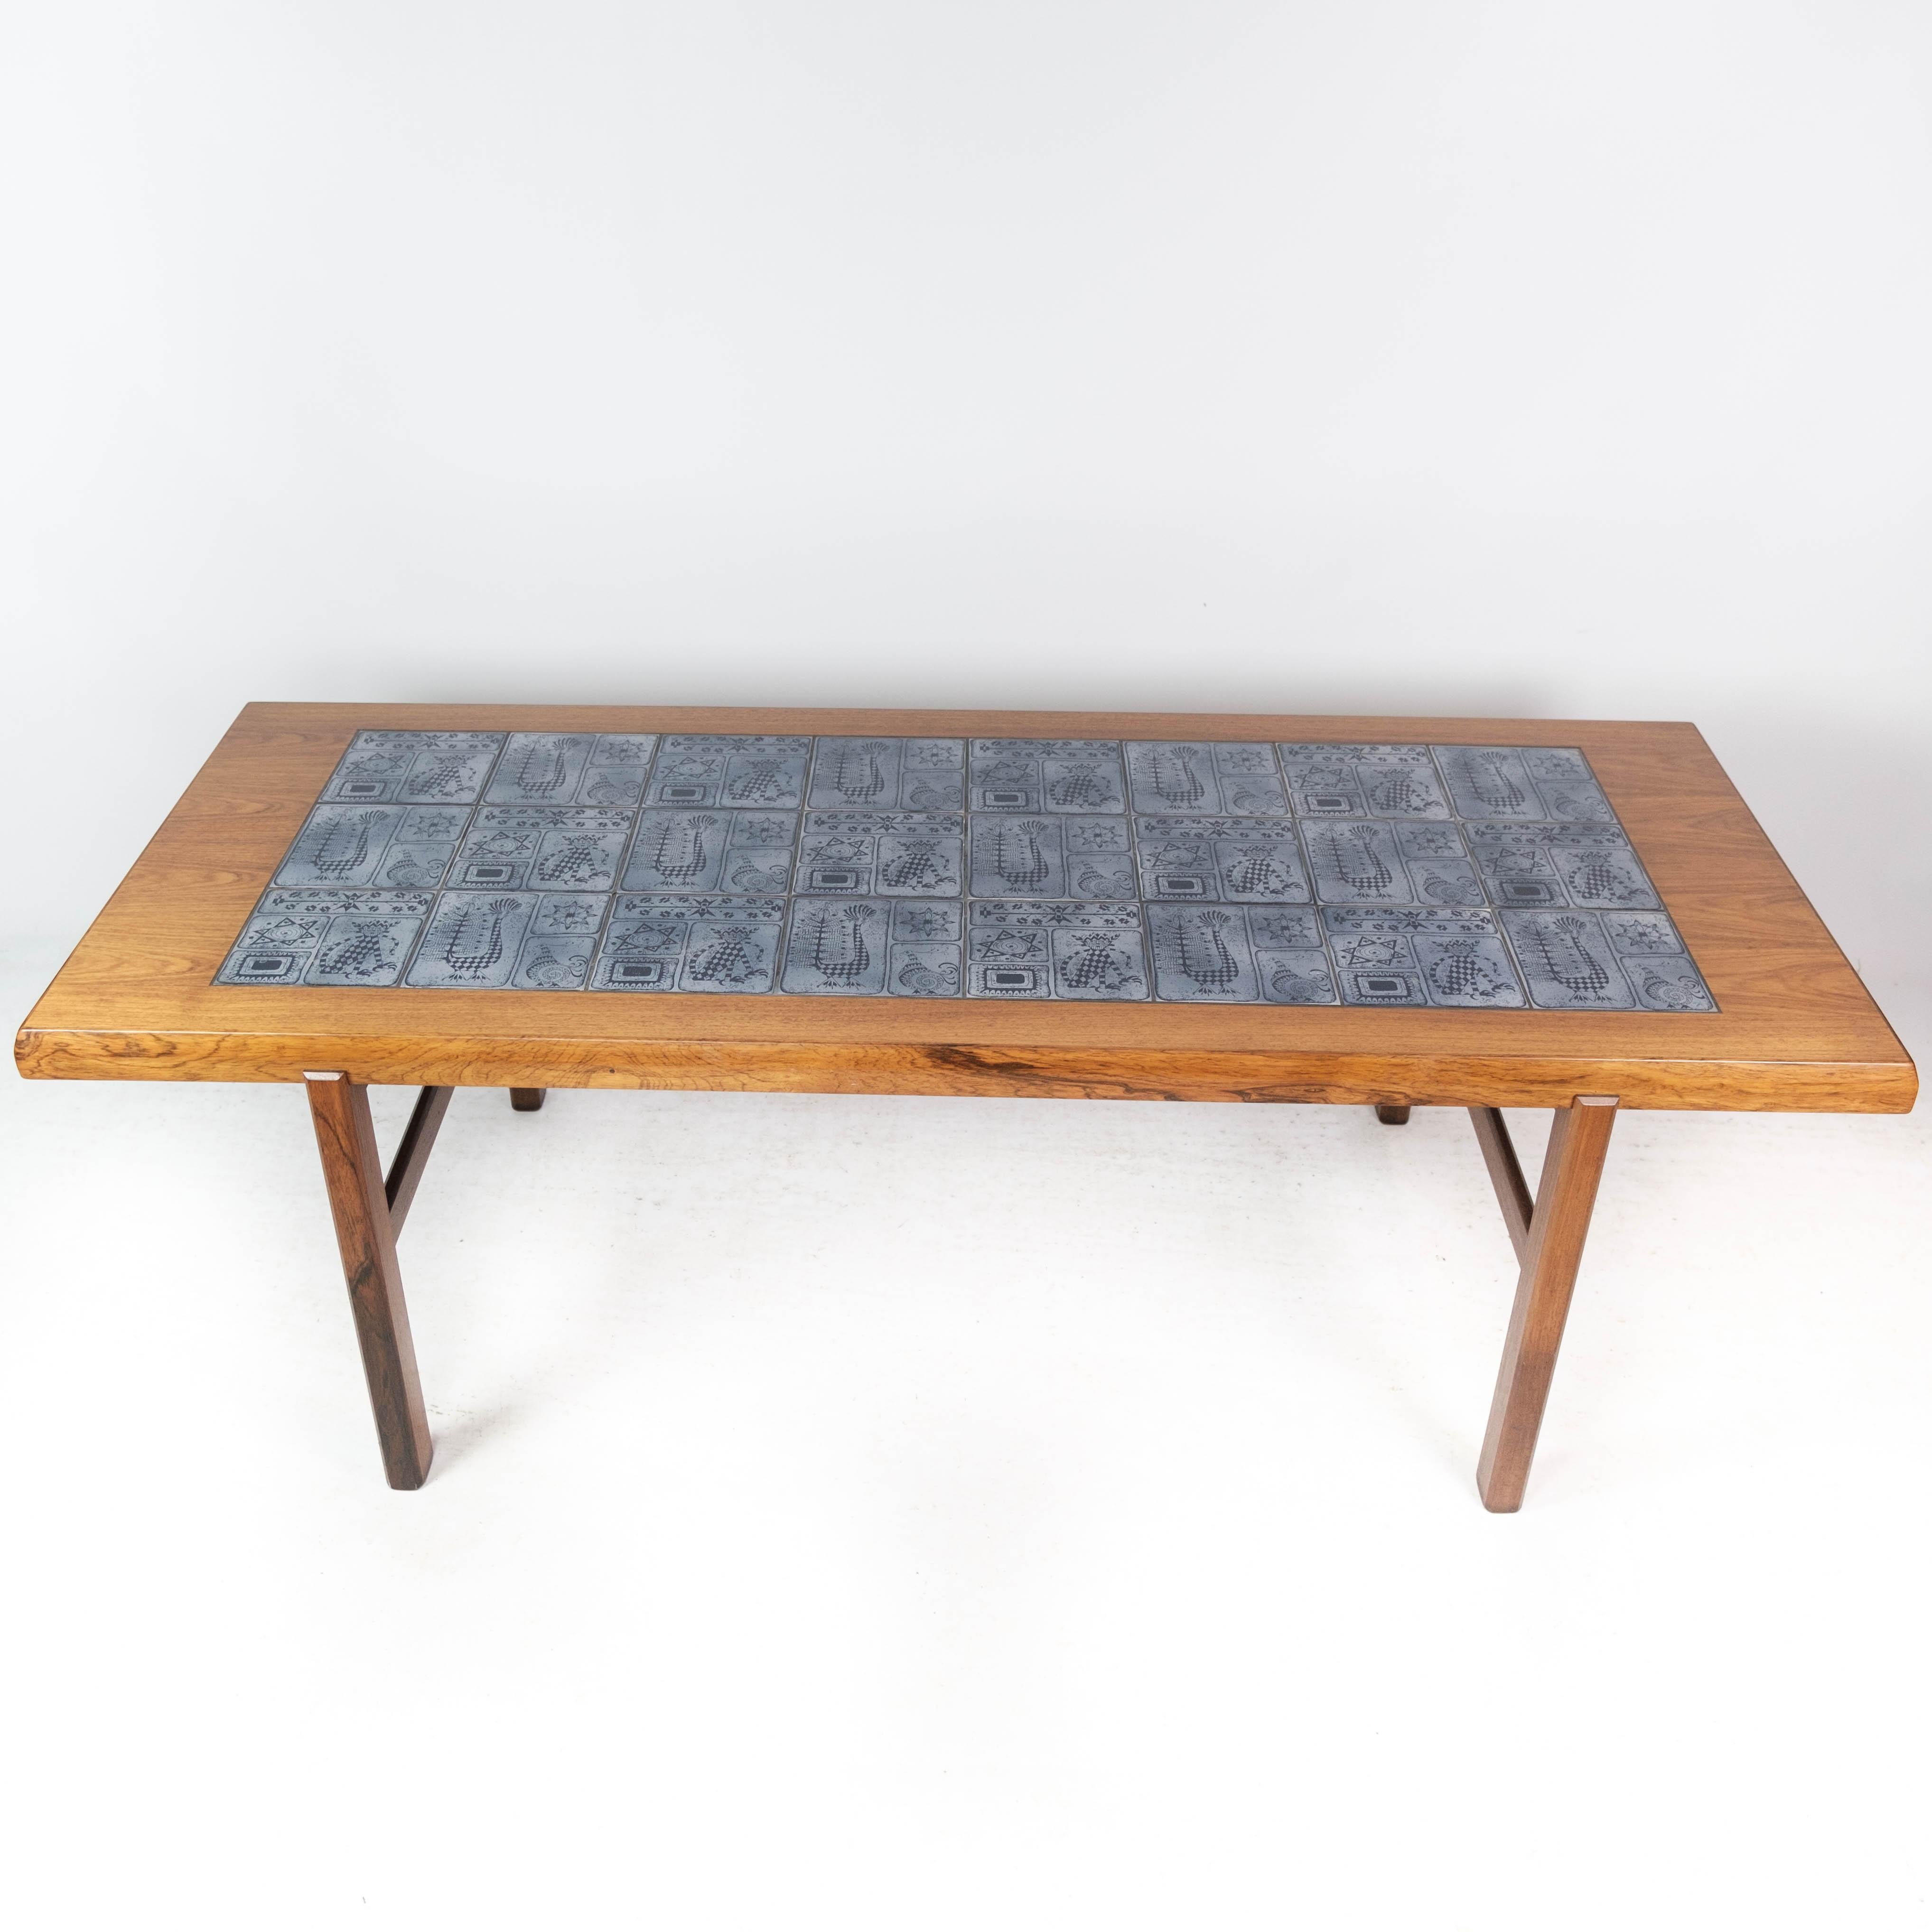 Dieser elegante Couchtisch ist ein beeindruckendes Beispiel für dänisches Design aus den 1960er Jahren, das von Arrebo Furniture mit Präzision und Stil gefertigt wurde. Der Tisch aus luxuriösem Palisanderholz strahlt Wärme und Raffinesse aus und